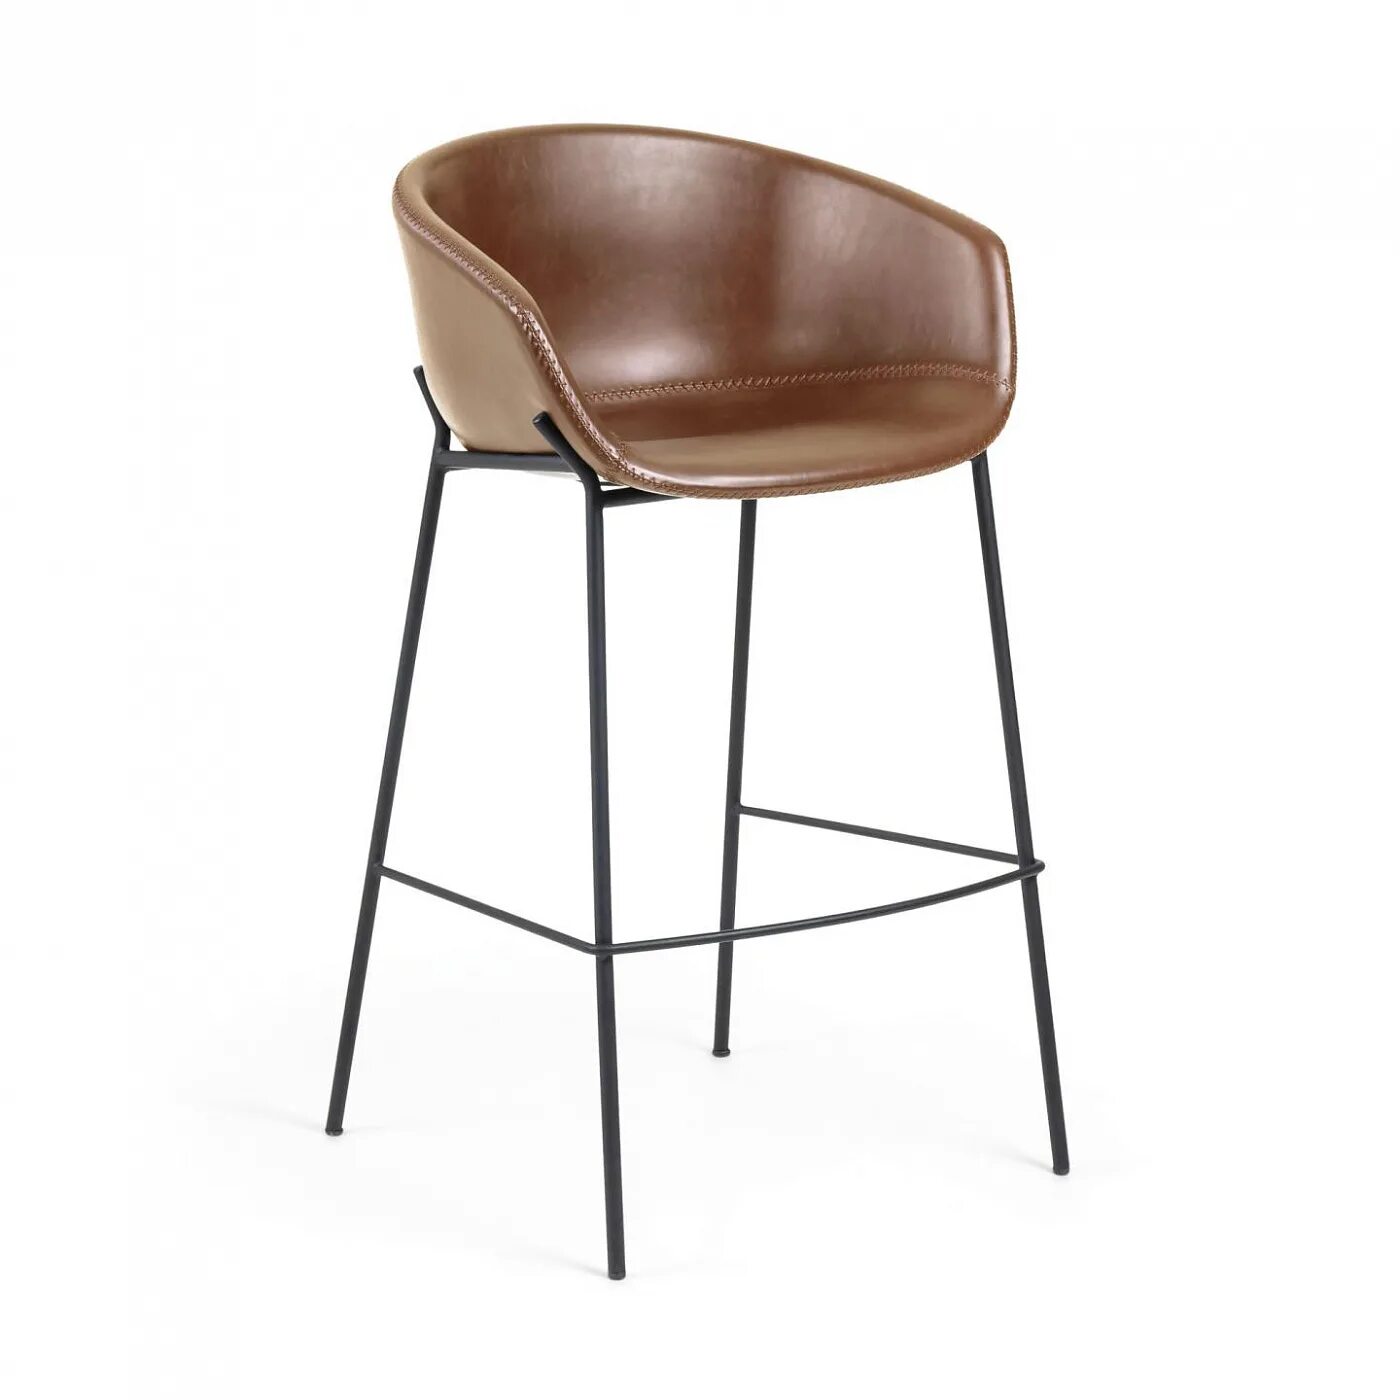 Полубарный стул. Барный стул la forma (ex Julia grup) Zadine. Полубарный стул Zadine коричневый, la forma. Барный стул Stag, коричневый. Полубарный стул 60 см.